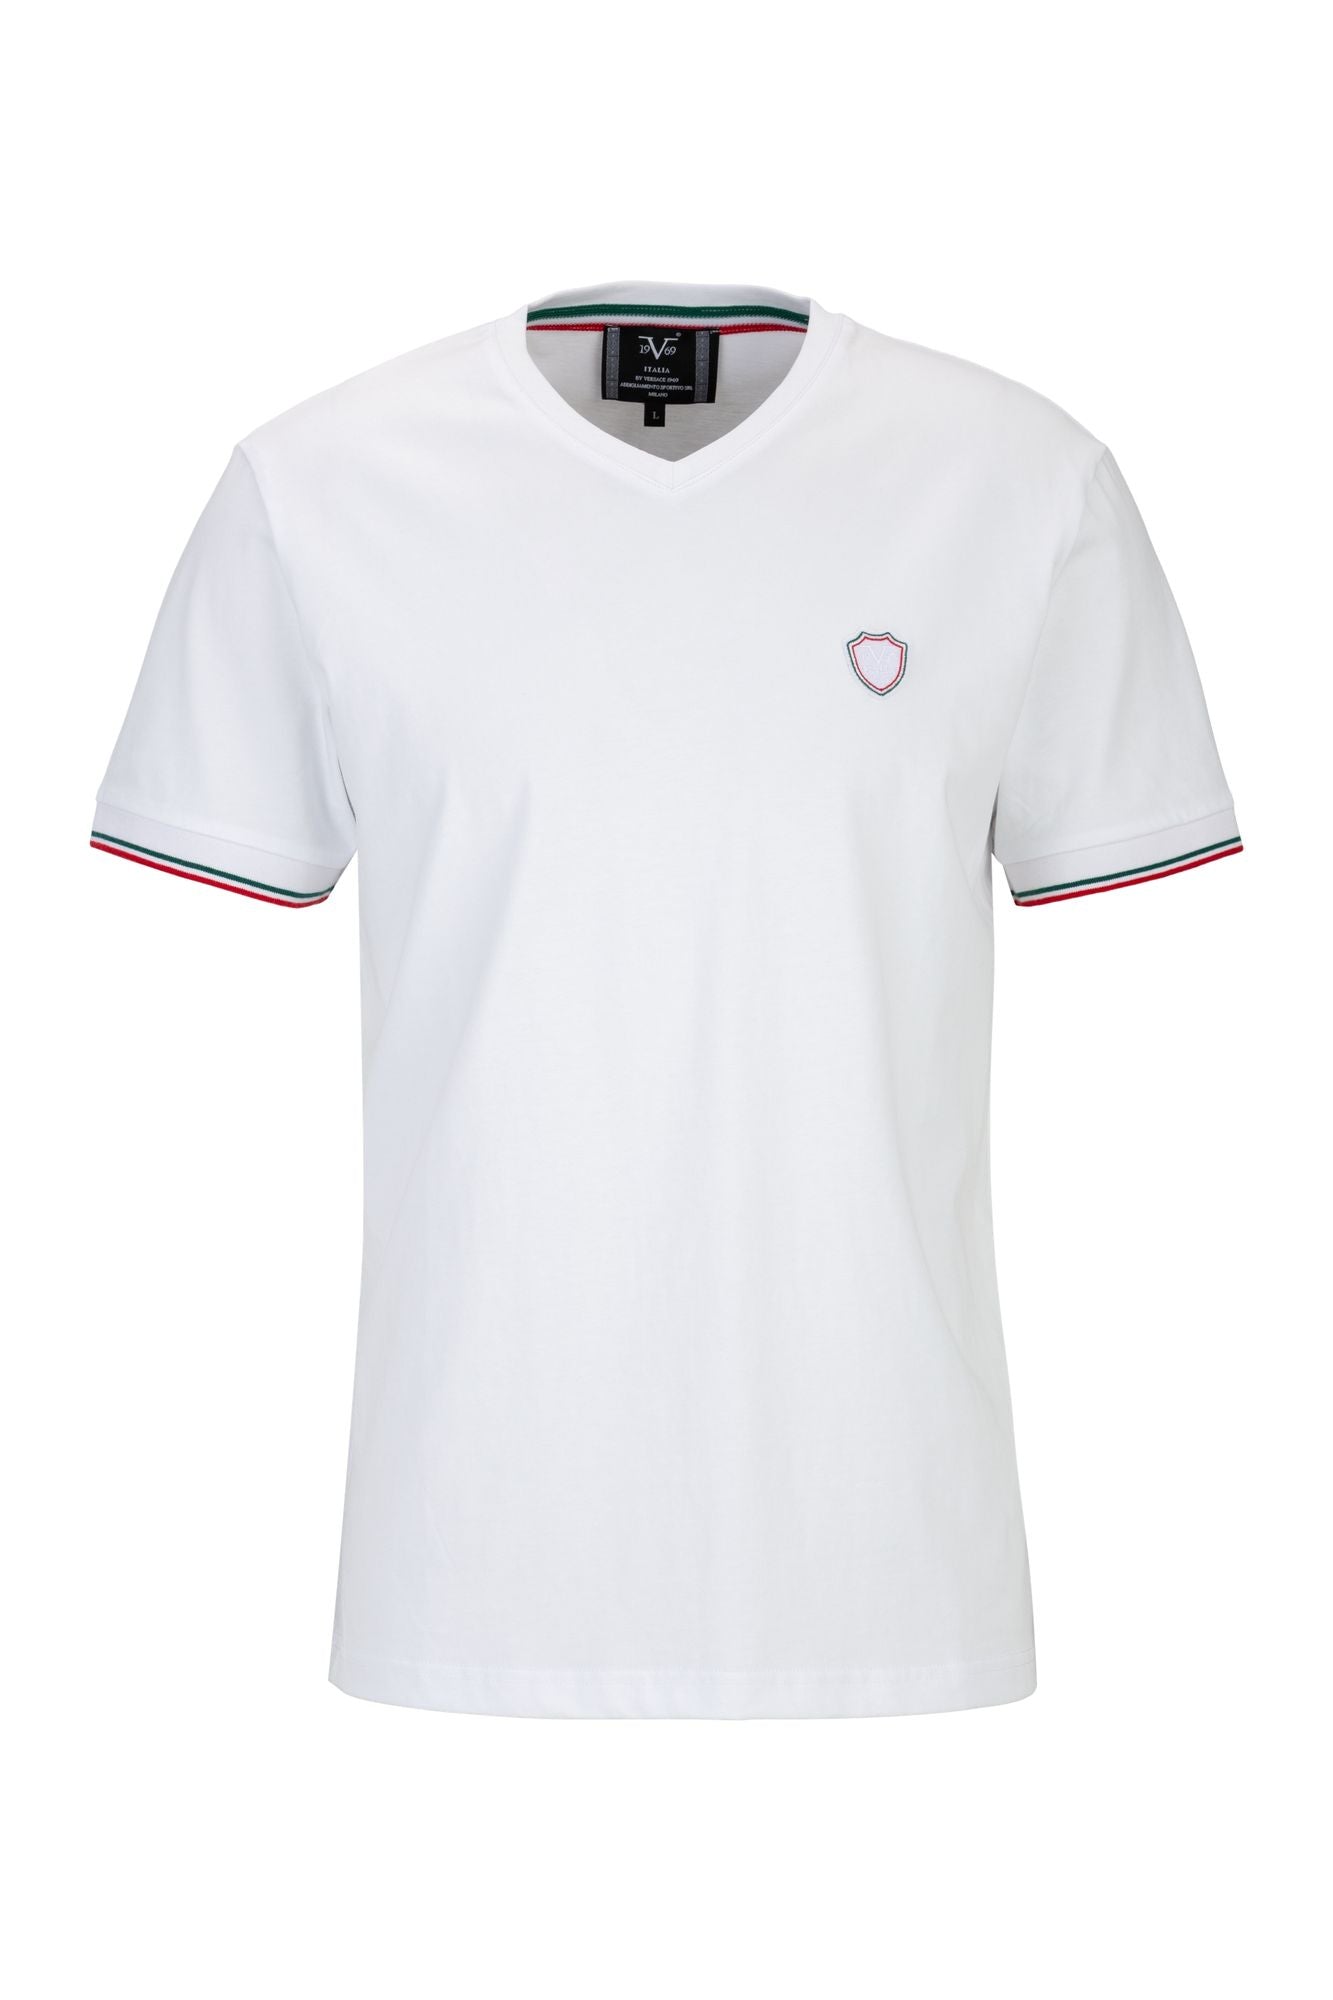 T-Shirt Tassilo in weiß